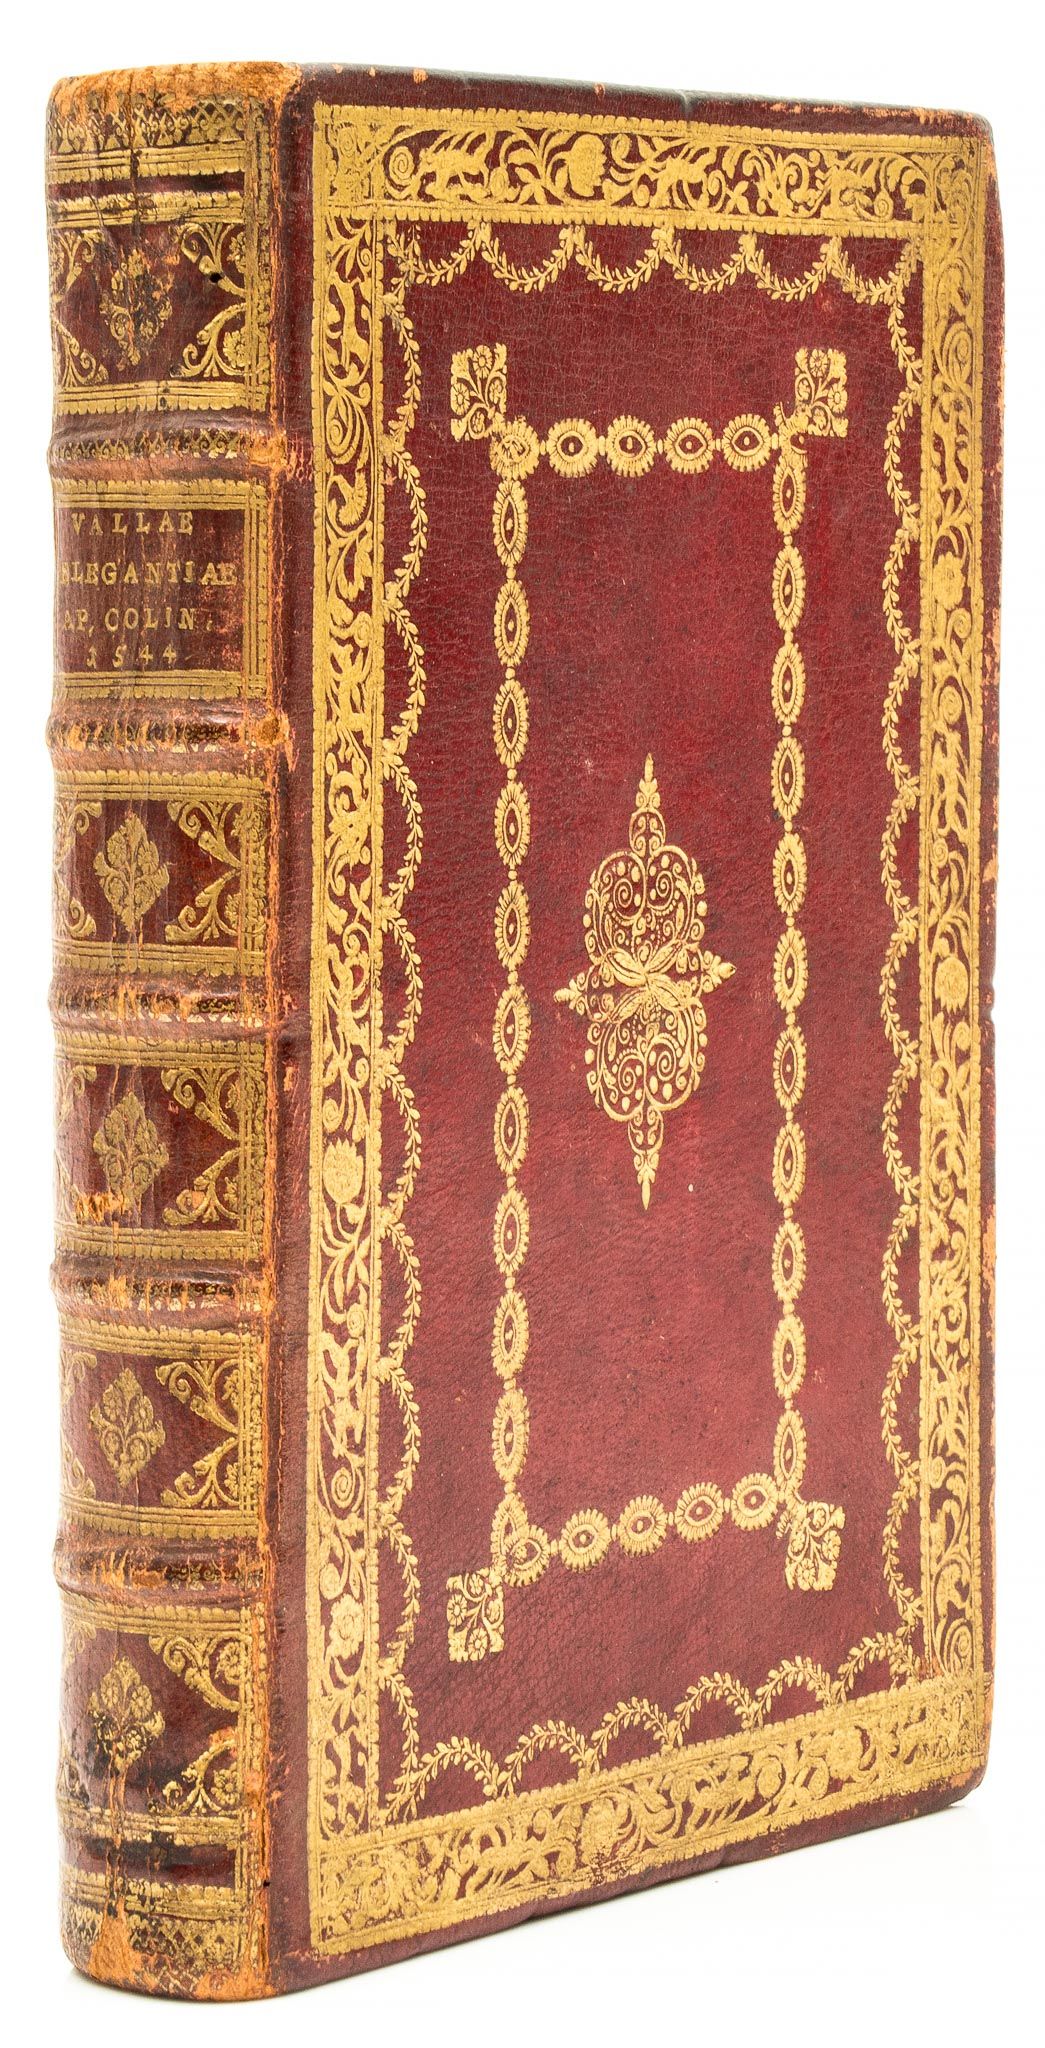 Valla (Laurentius) - De Linguae Latinae Elegantia libri six,  title within wood-engraved - Image 2 of 2